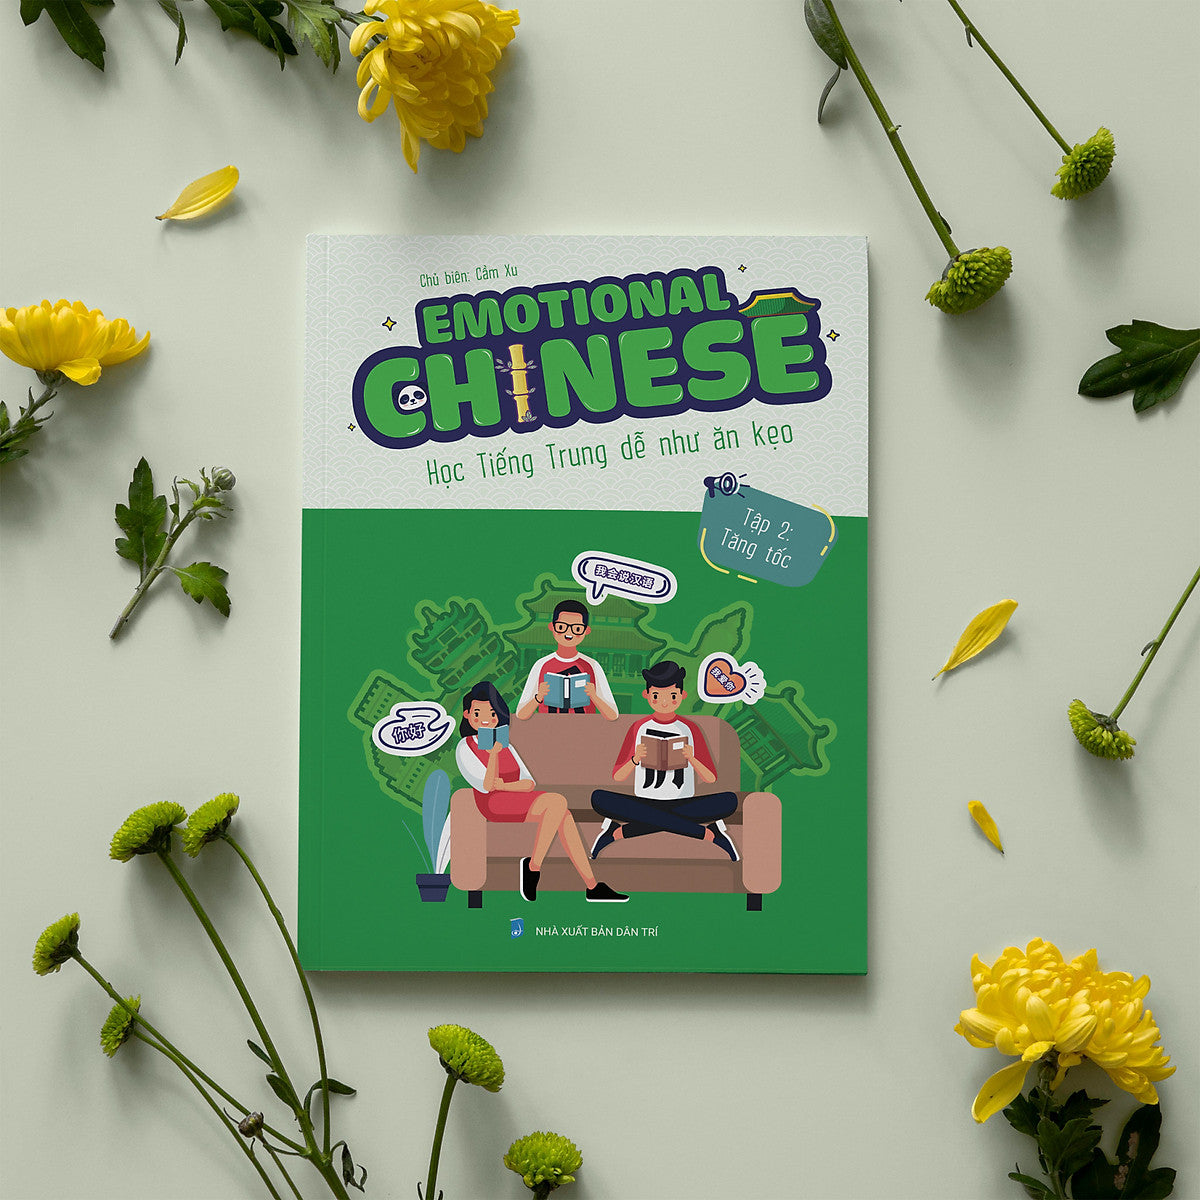 Emotional Chinese Tiếng Trung Cảm Xúc - Tập 2 Tăng Tốc